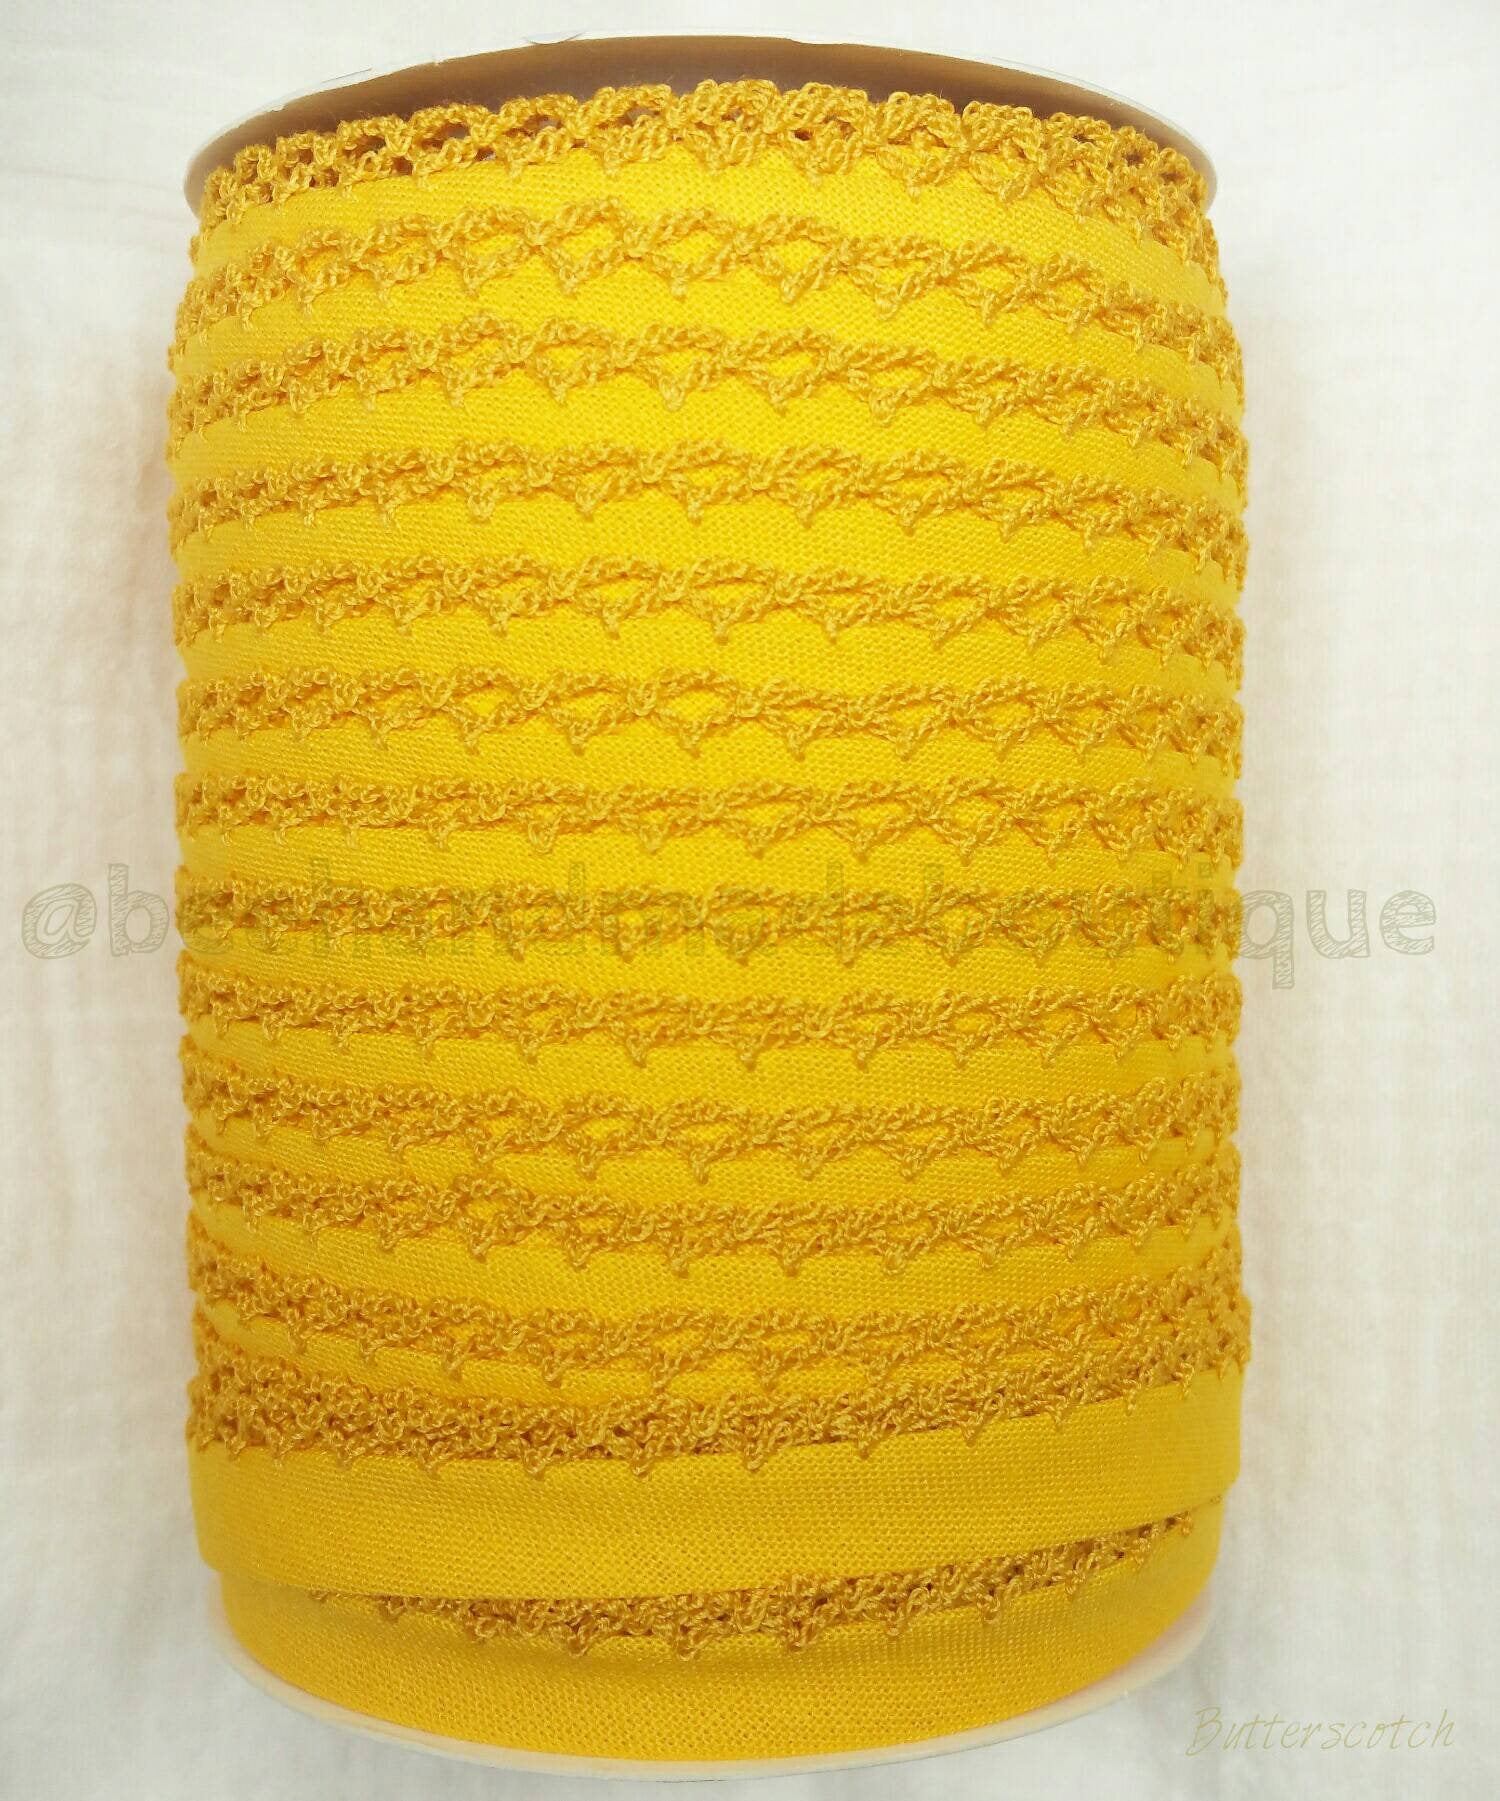 Yellow Crochet Bias Tape, Double Fold Bias Tape, Crochet Edge Bias Tape, Quilt Binding, Yellow Lace Trim, BUTTERSCOTCH Picot Egde Bias Tape